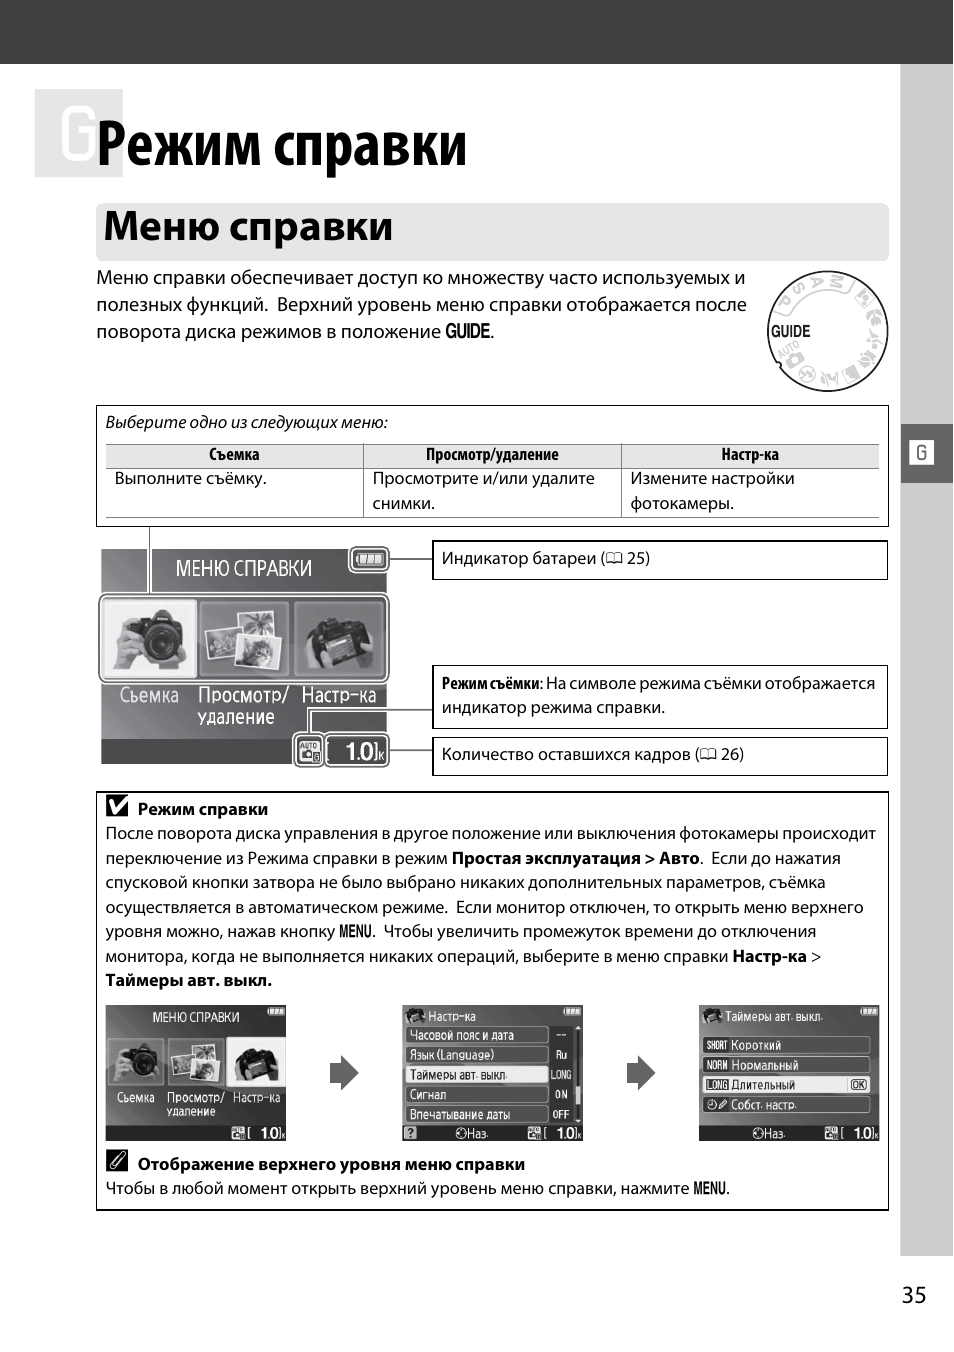 Режим справки, Меню справки | Инструкция по эксплуатации Nikon D3000 | Страница 53 / 216